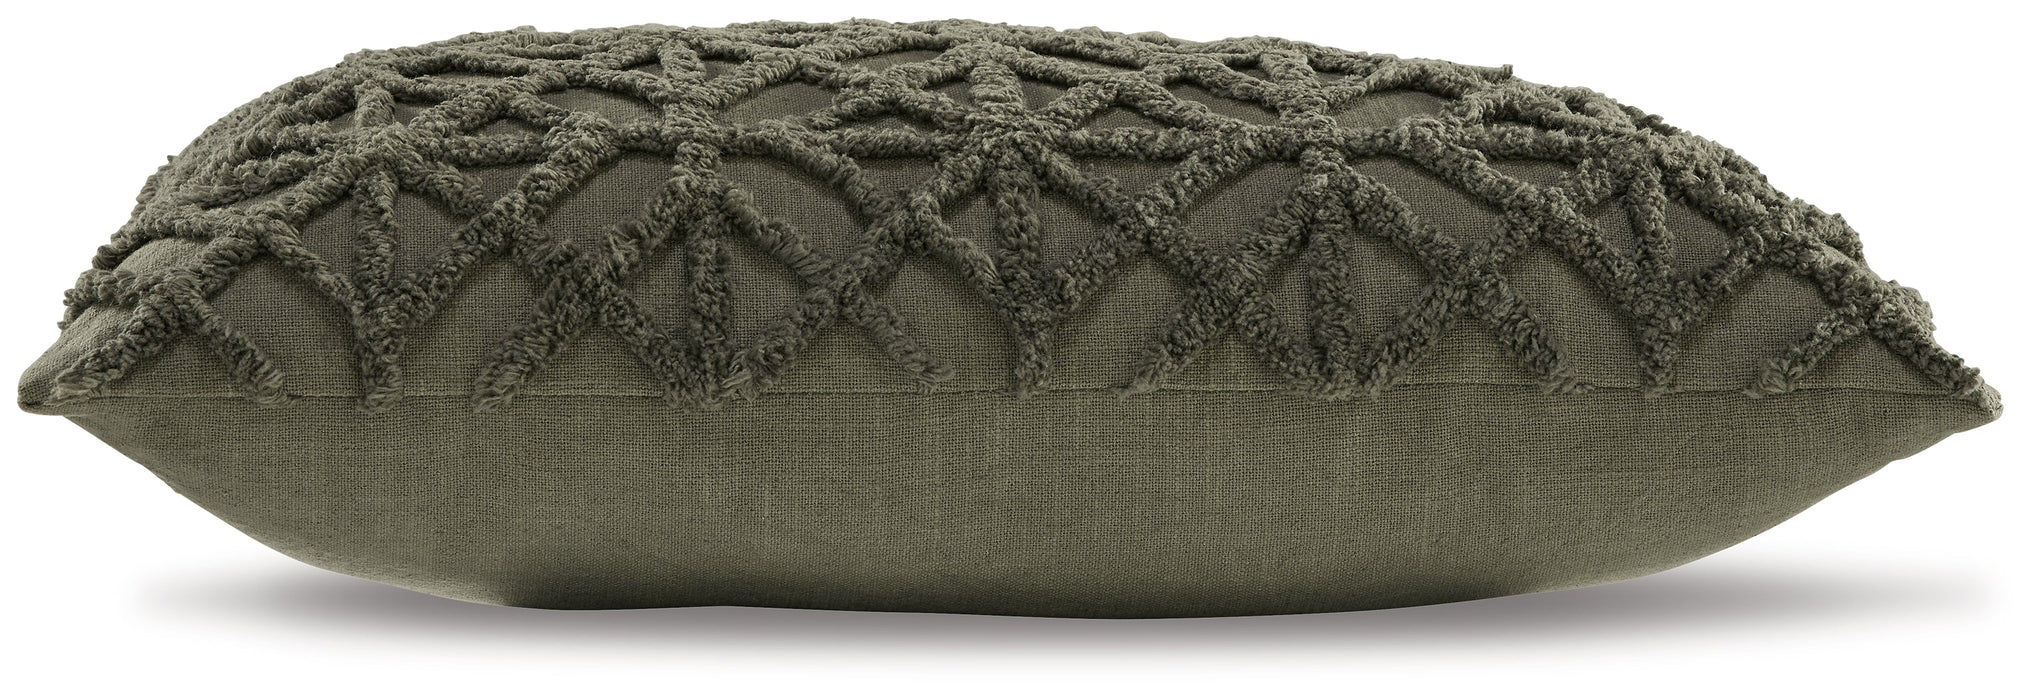 Finnbrook Green Pillow, Set of 4 - A1000481 - Vega Furniture